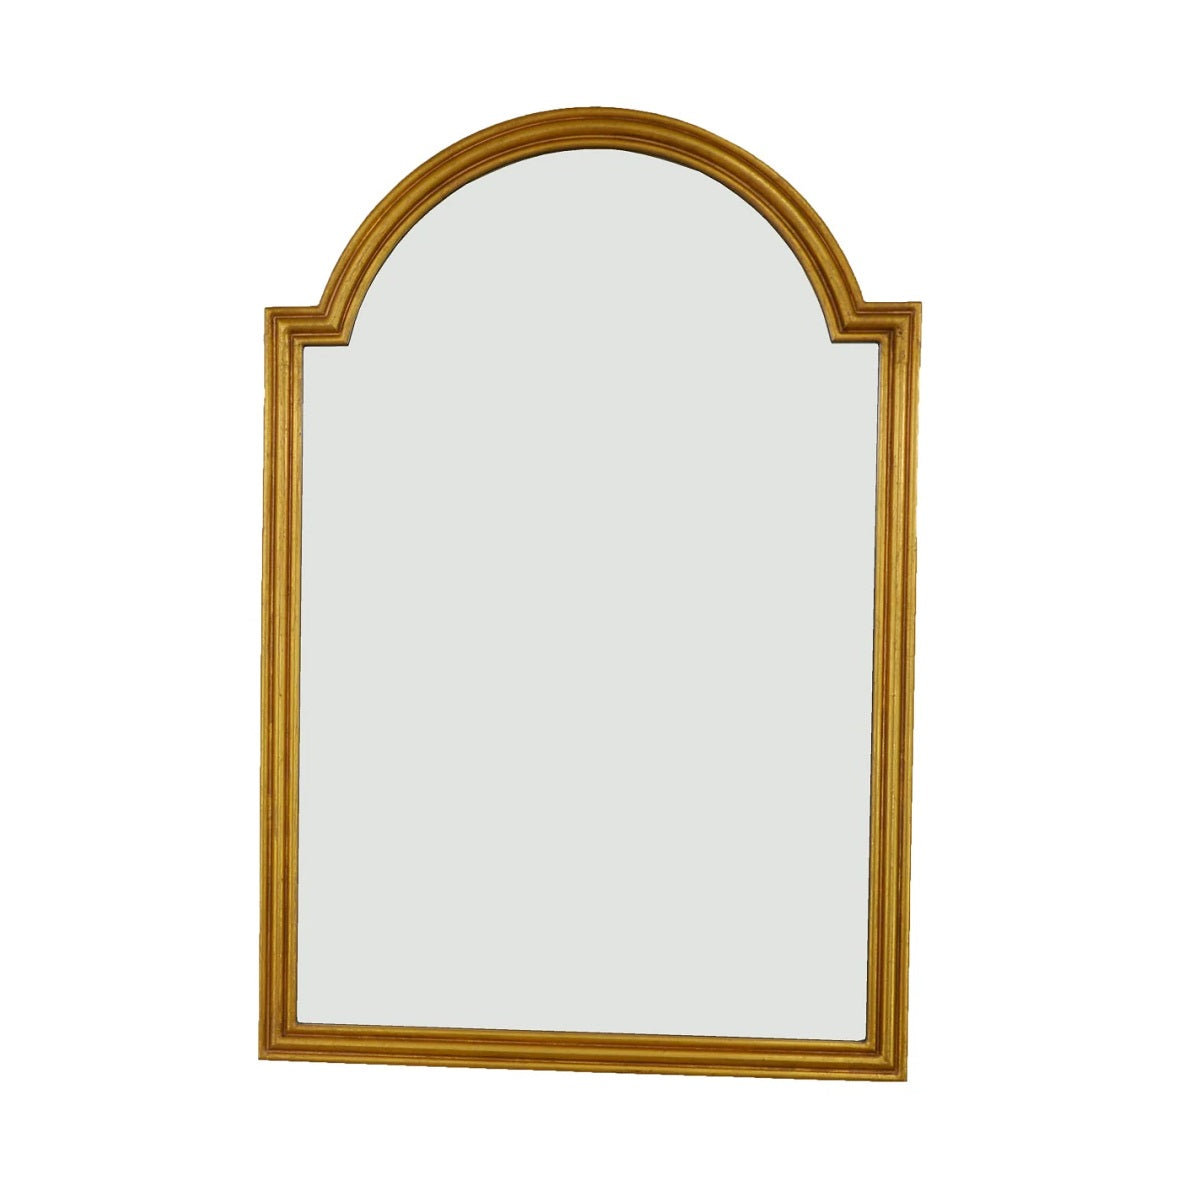 Carpini Square Decorative Vanity Mirror